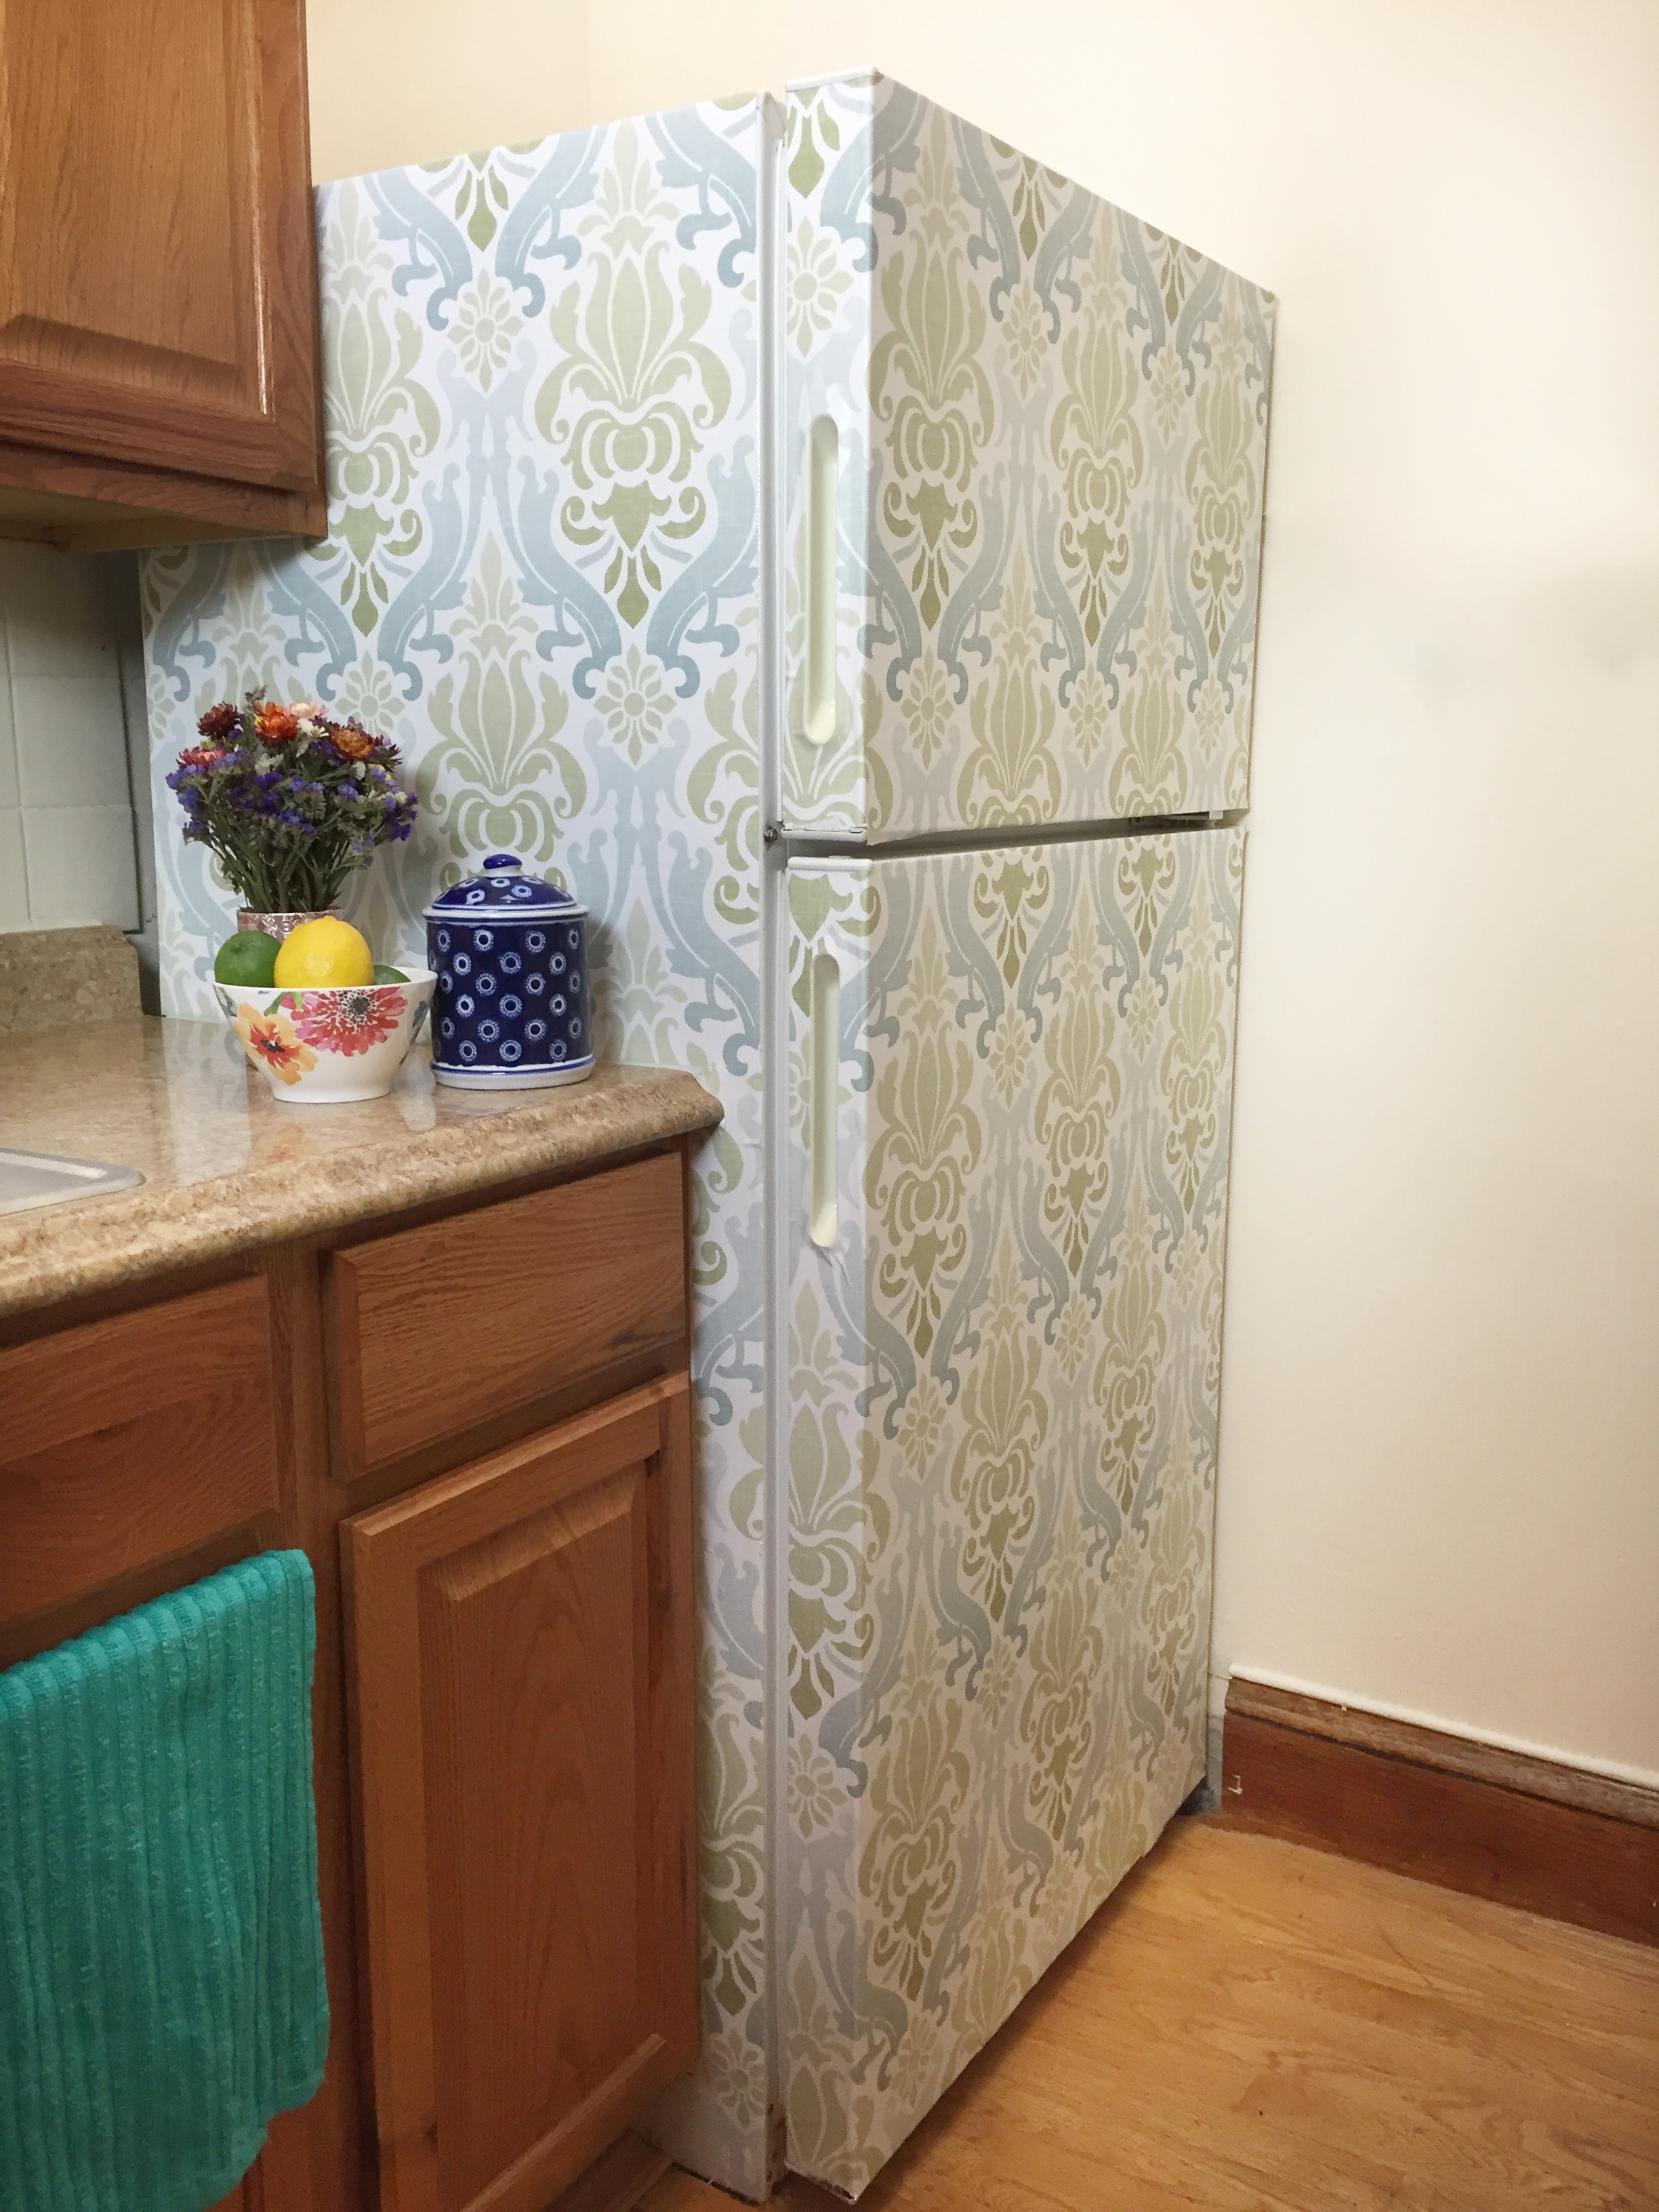 refrigerator update